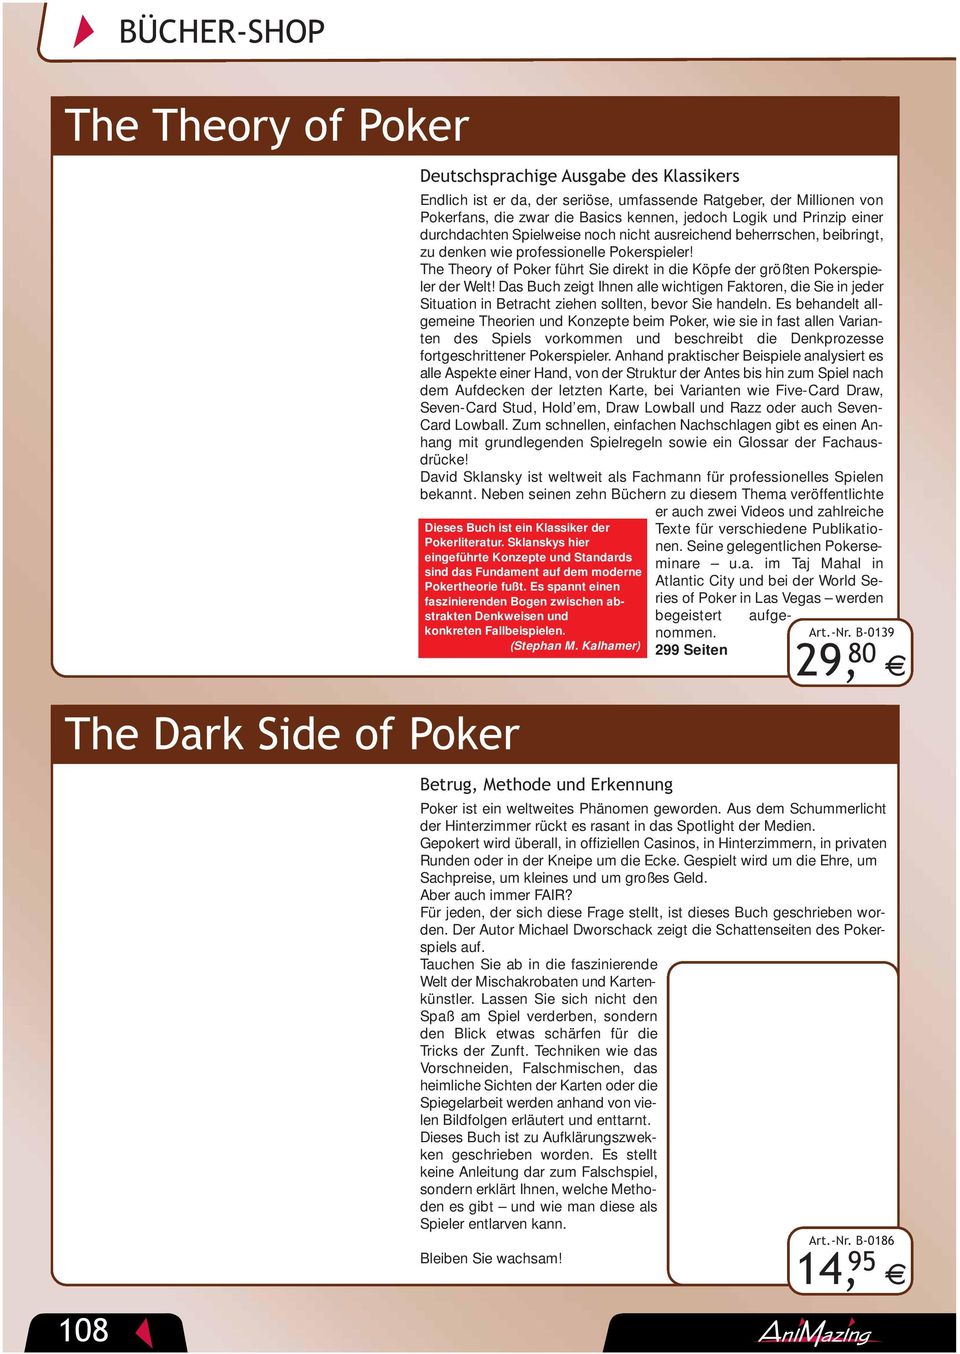 The Theory of Poker führt Sie direkt in die Köpfe der größten Pokerspieler der Welt!